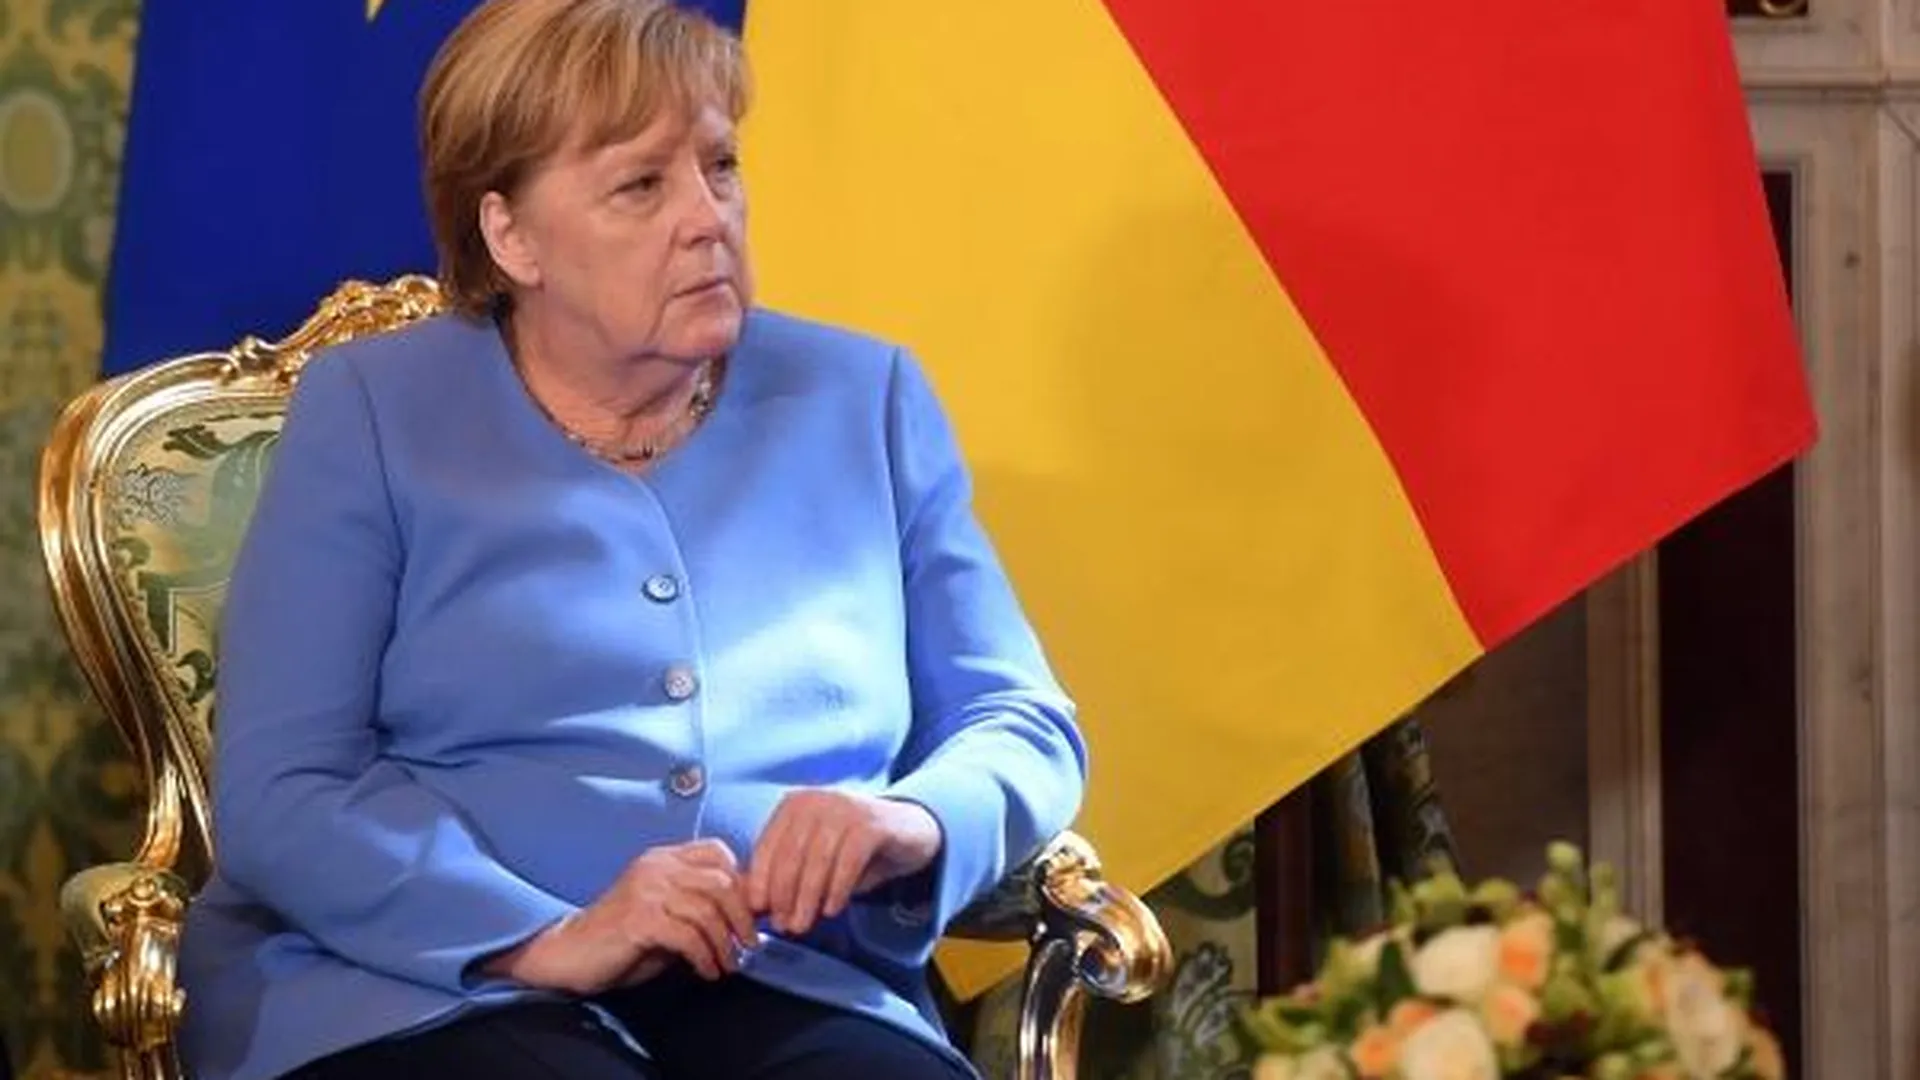 Муж Ангелы Меркель оставил ее без зонта под дождем. Правила этикета в Германии изменились?